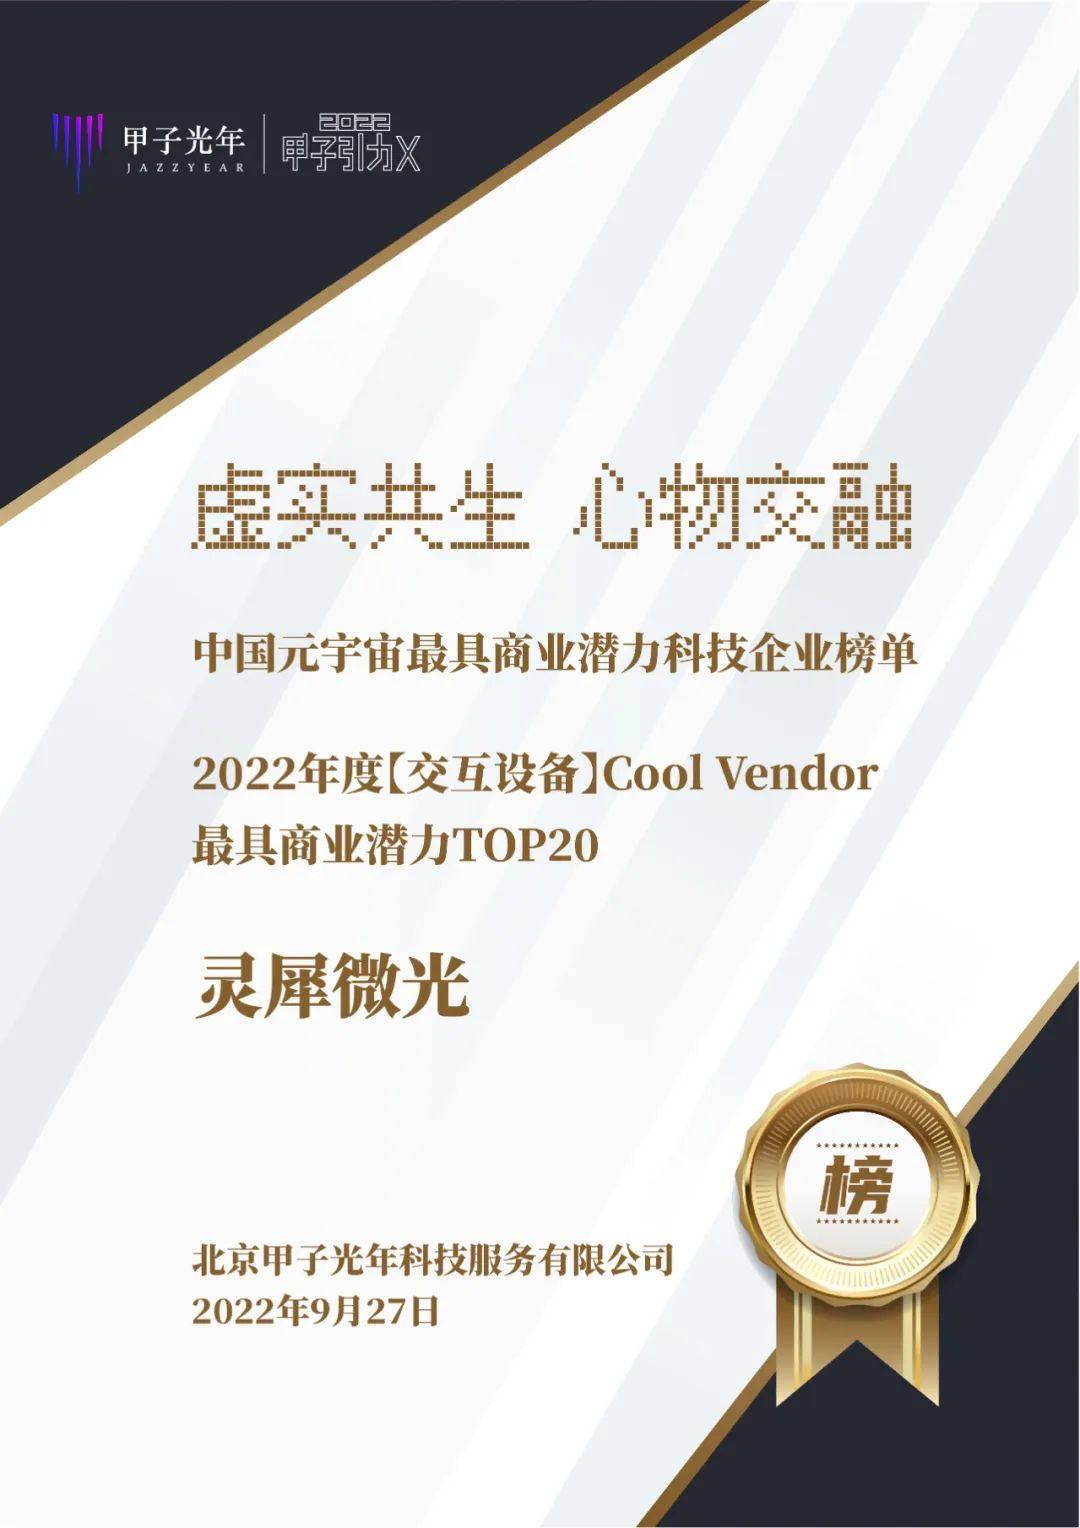 灵犀微光荣登2022「甲子引力X」元宇宙峰会“中国元宇宙最具商业潜力科技企业榜单”